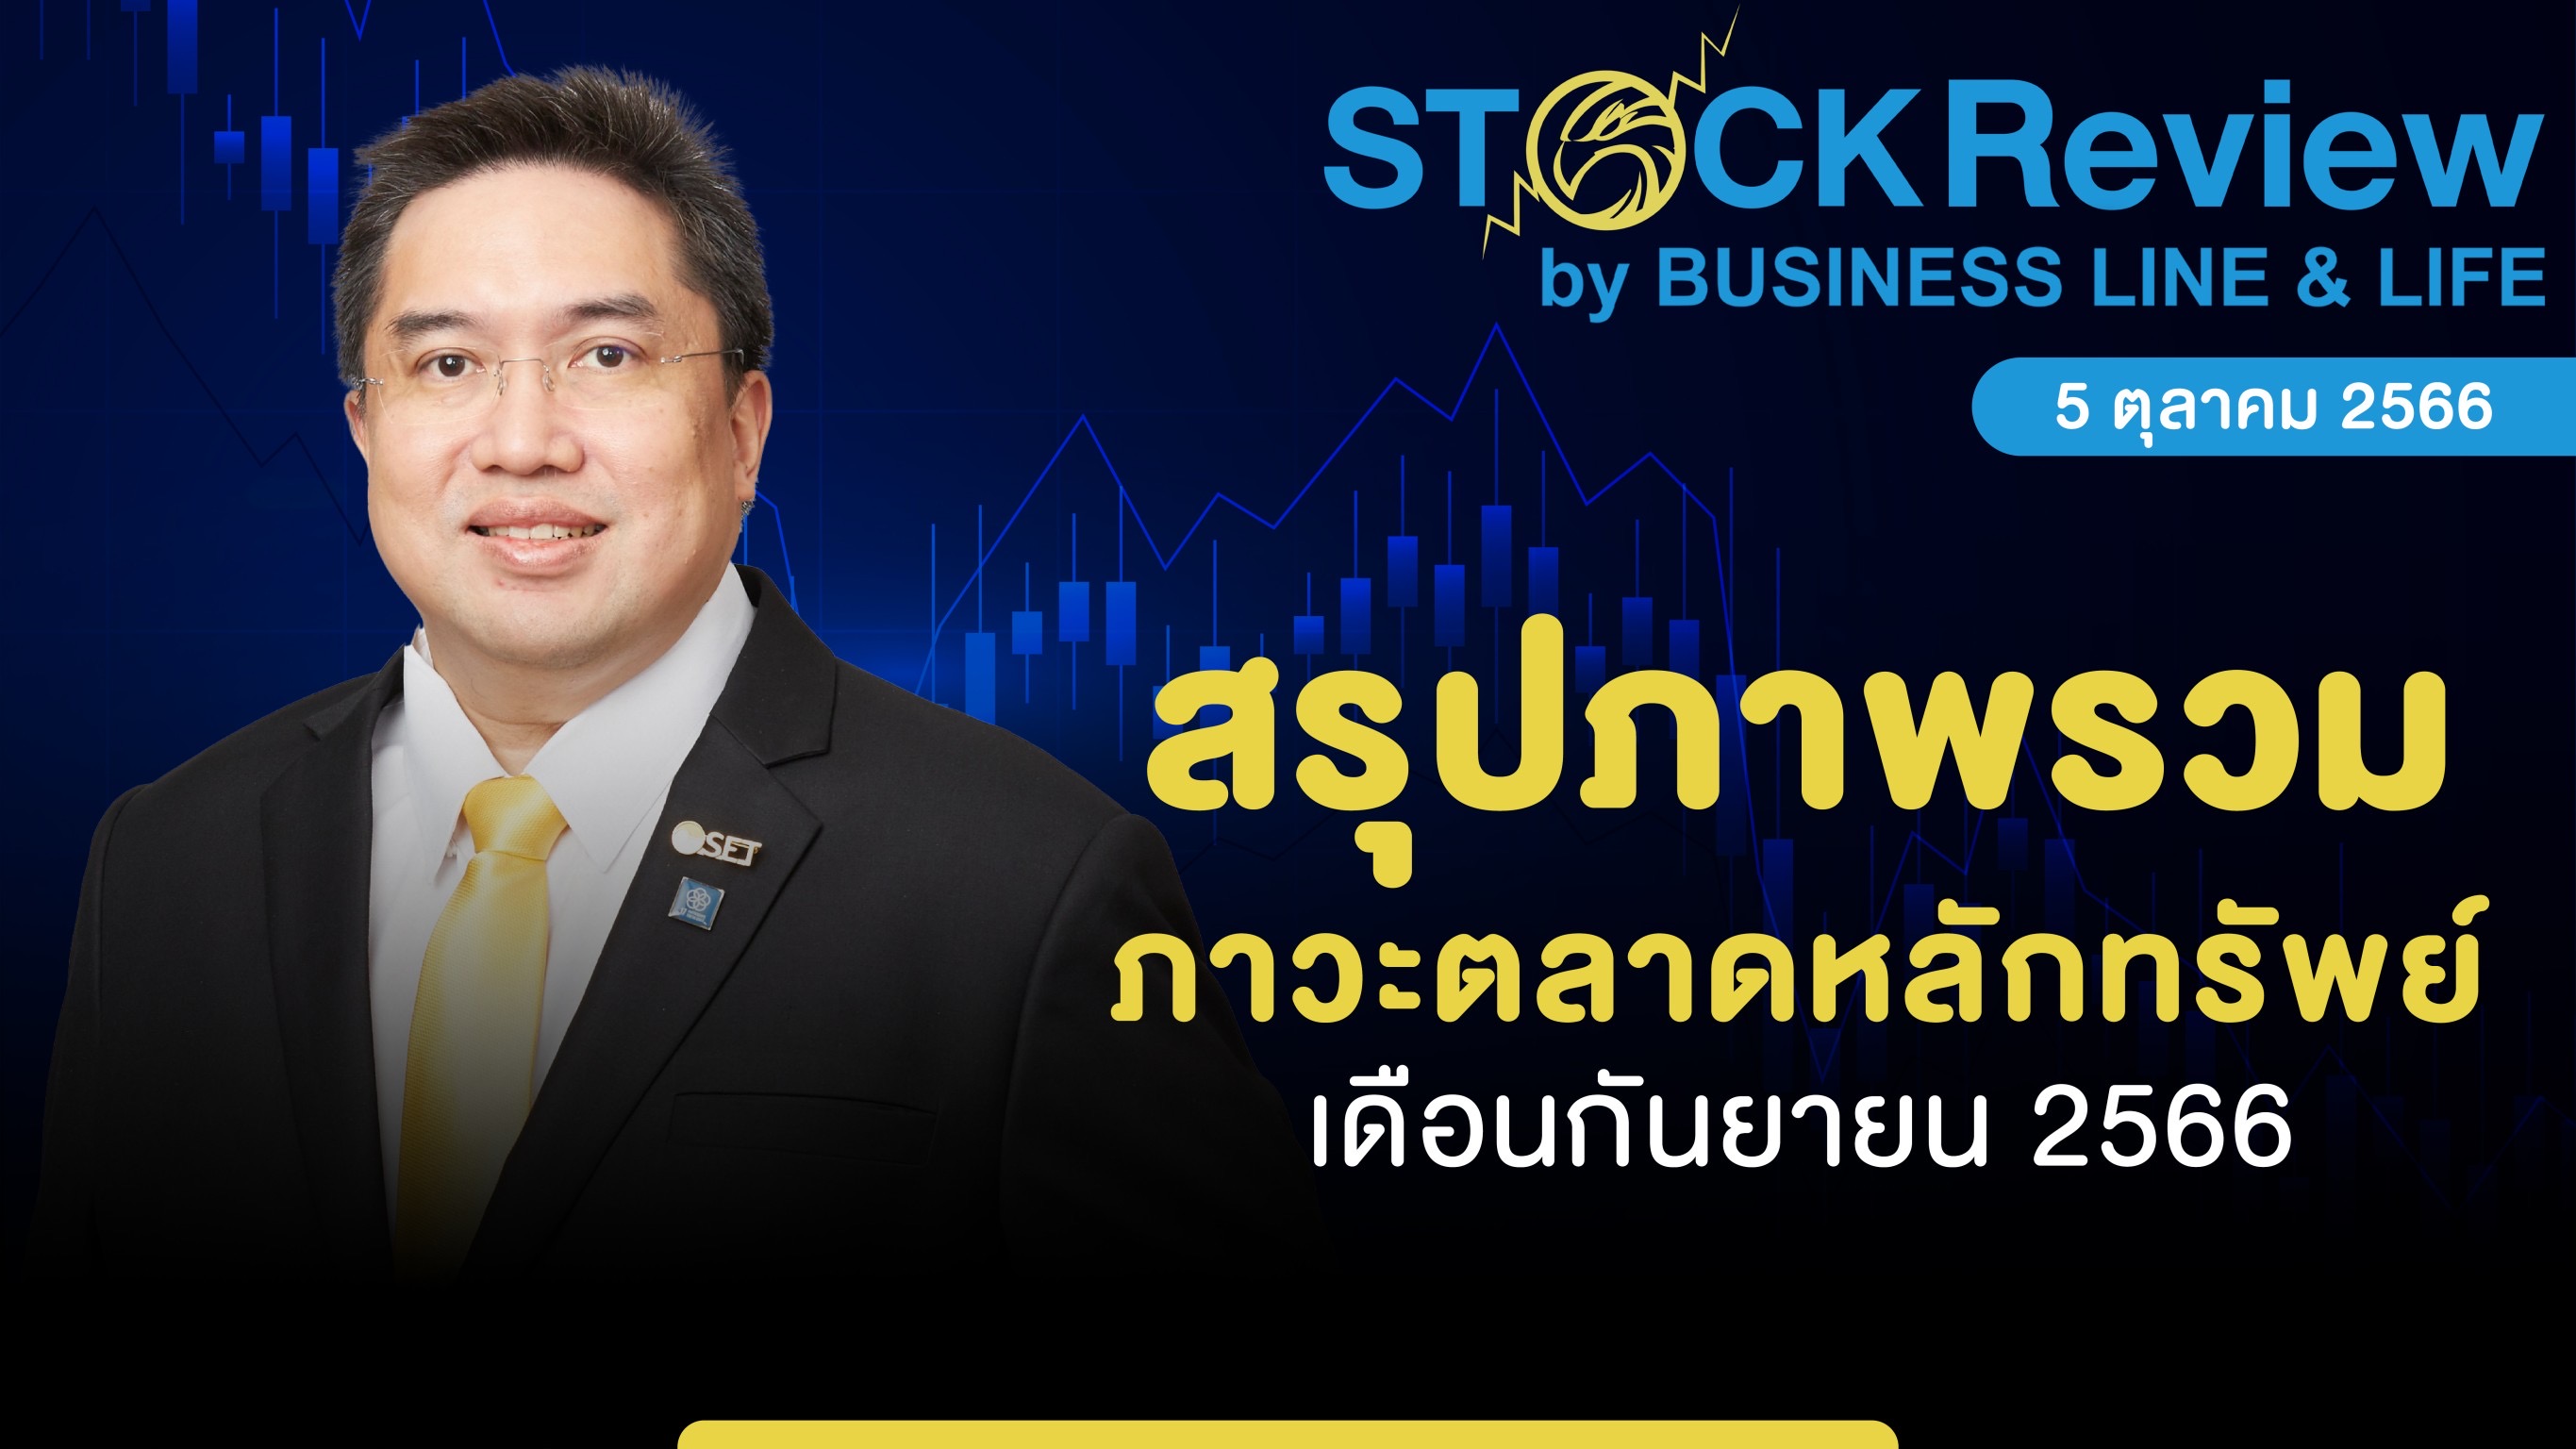 สภาวะตลาดหุ้นไทยเดือนก.ย. 2566 หุ้นกลุ่มเติบโตและเทคโนโลยีปรับฐานครั้งใหญ่